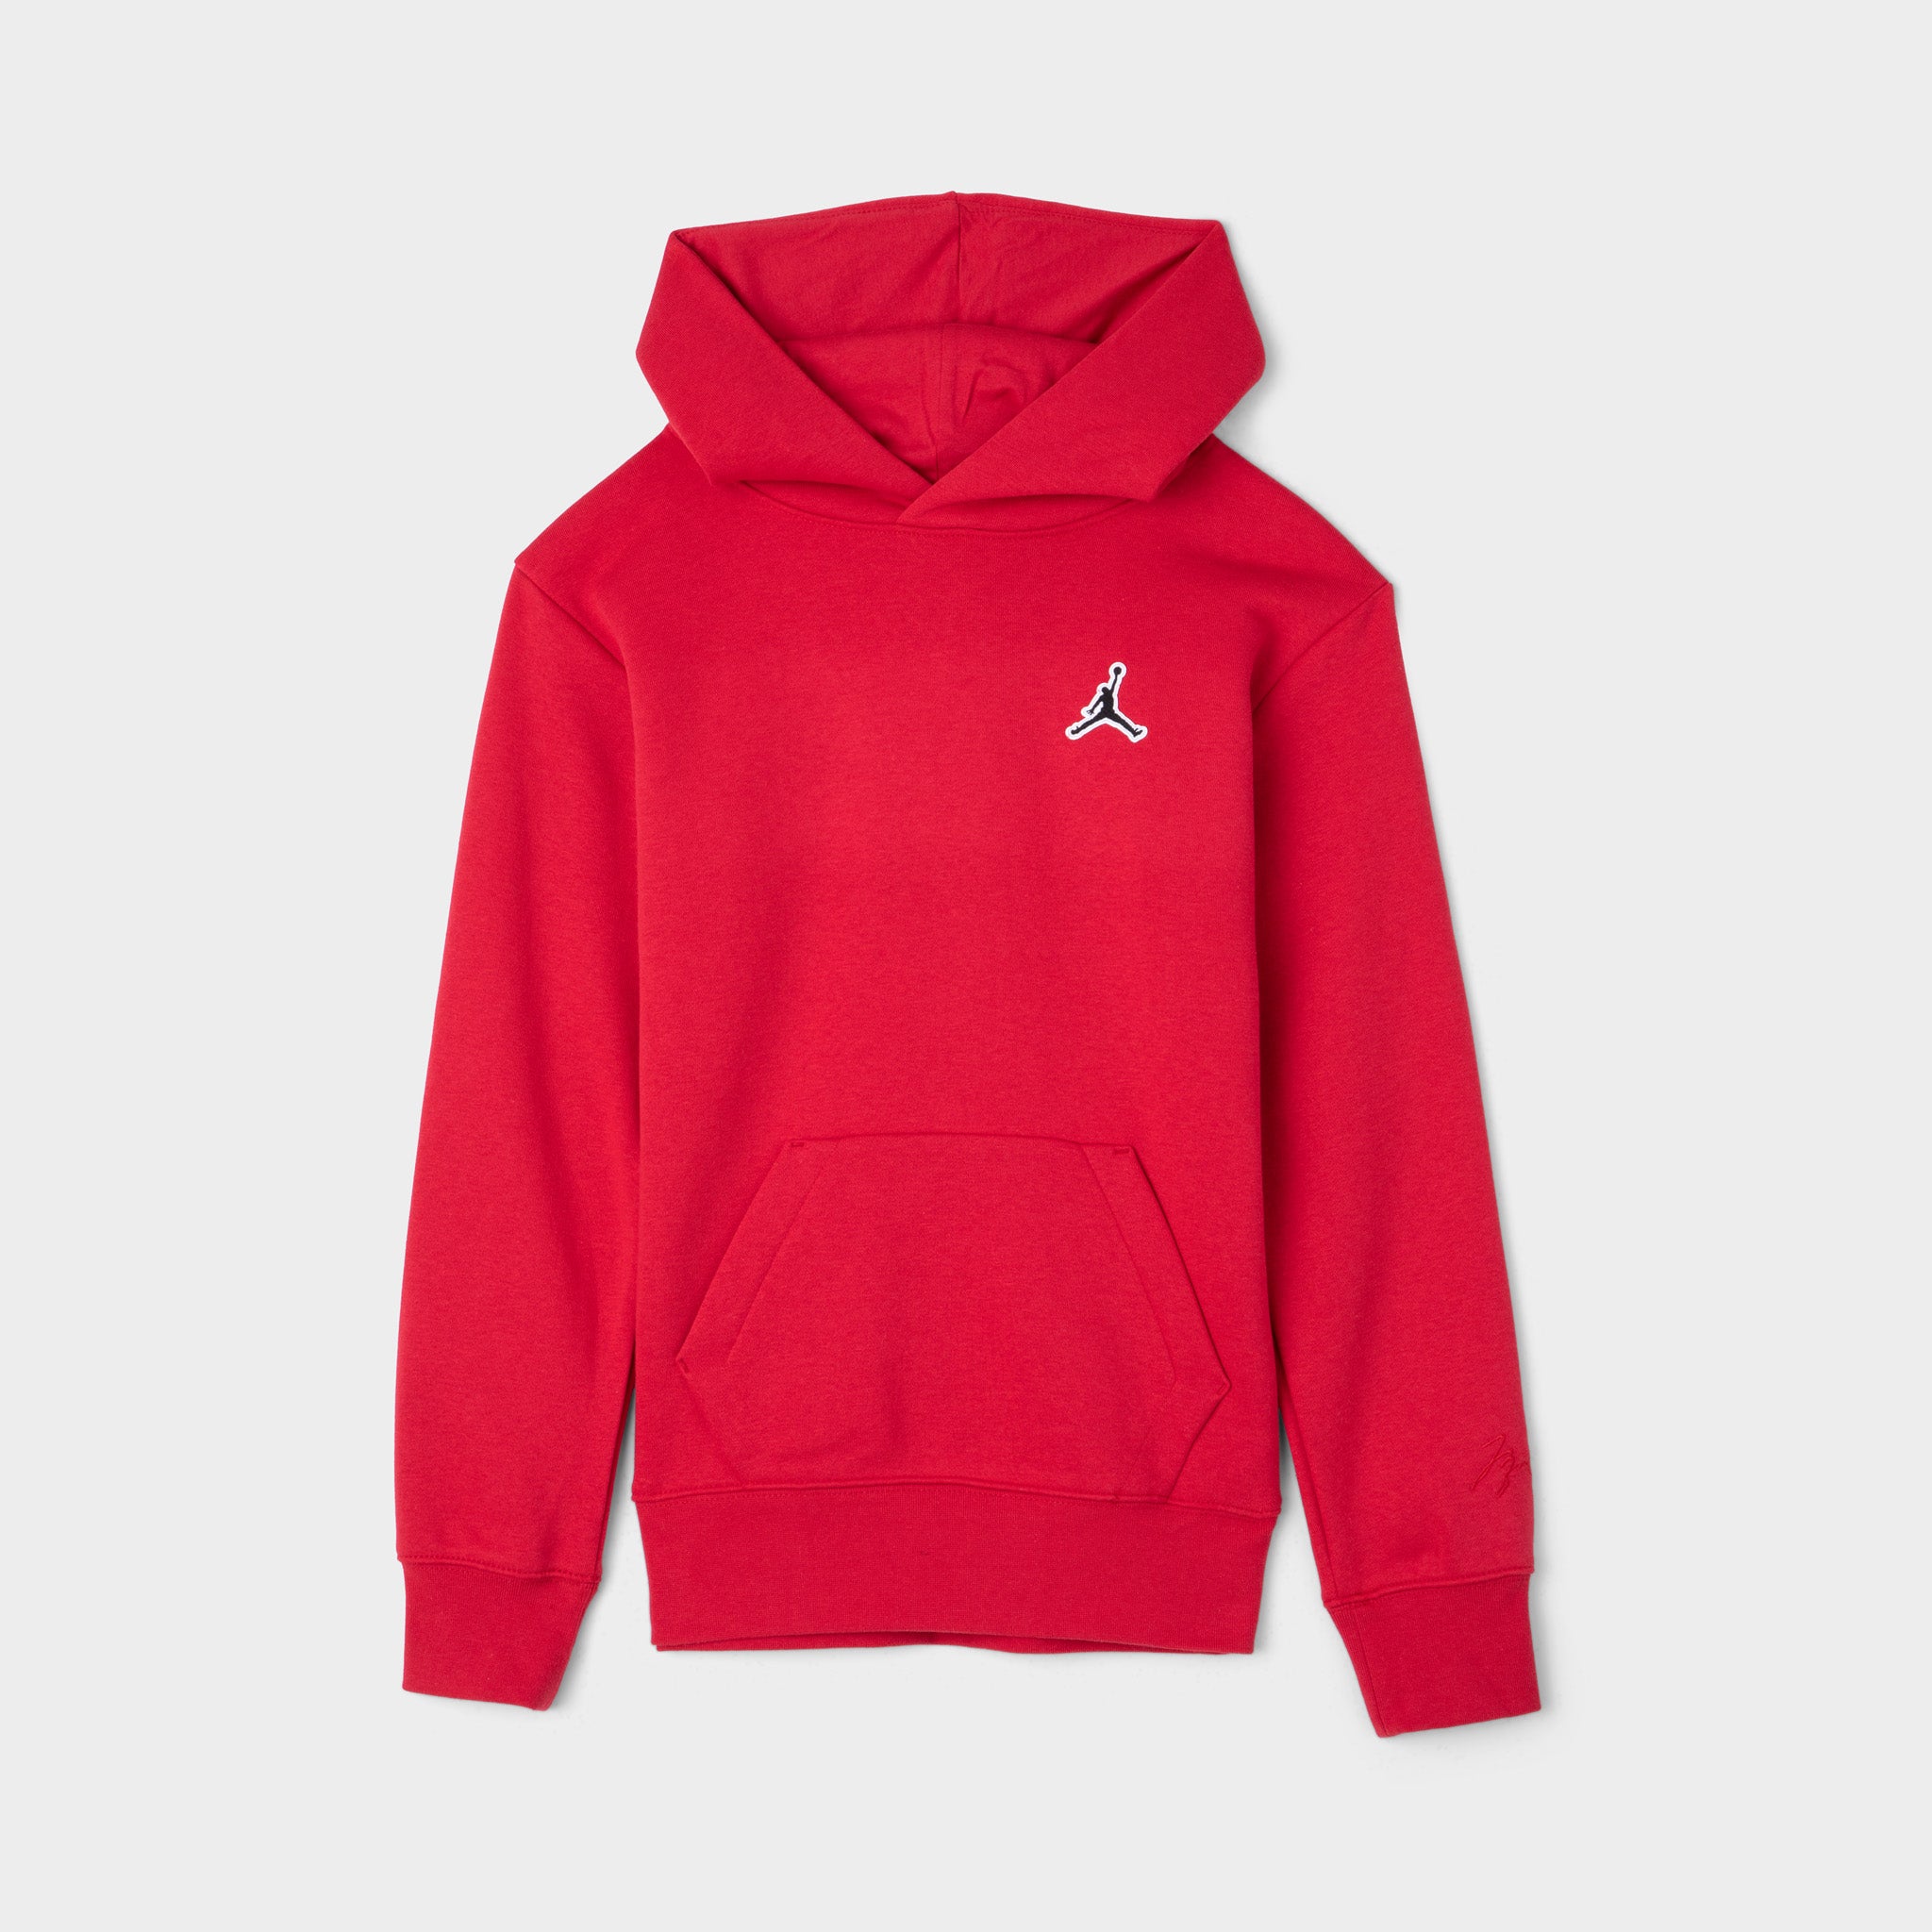 all red jordan hoodie